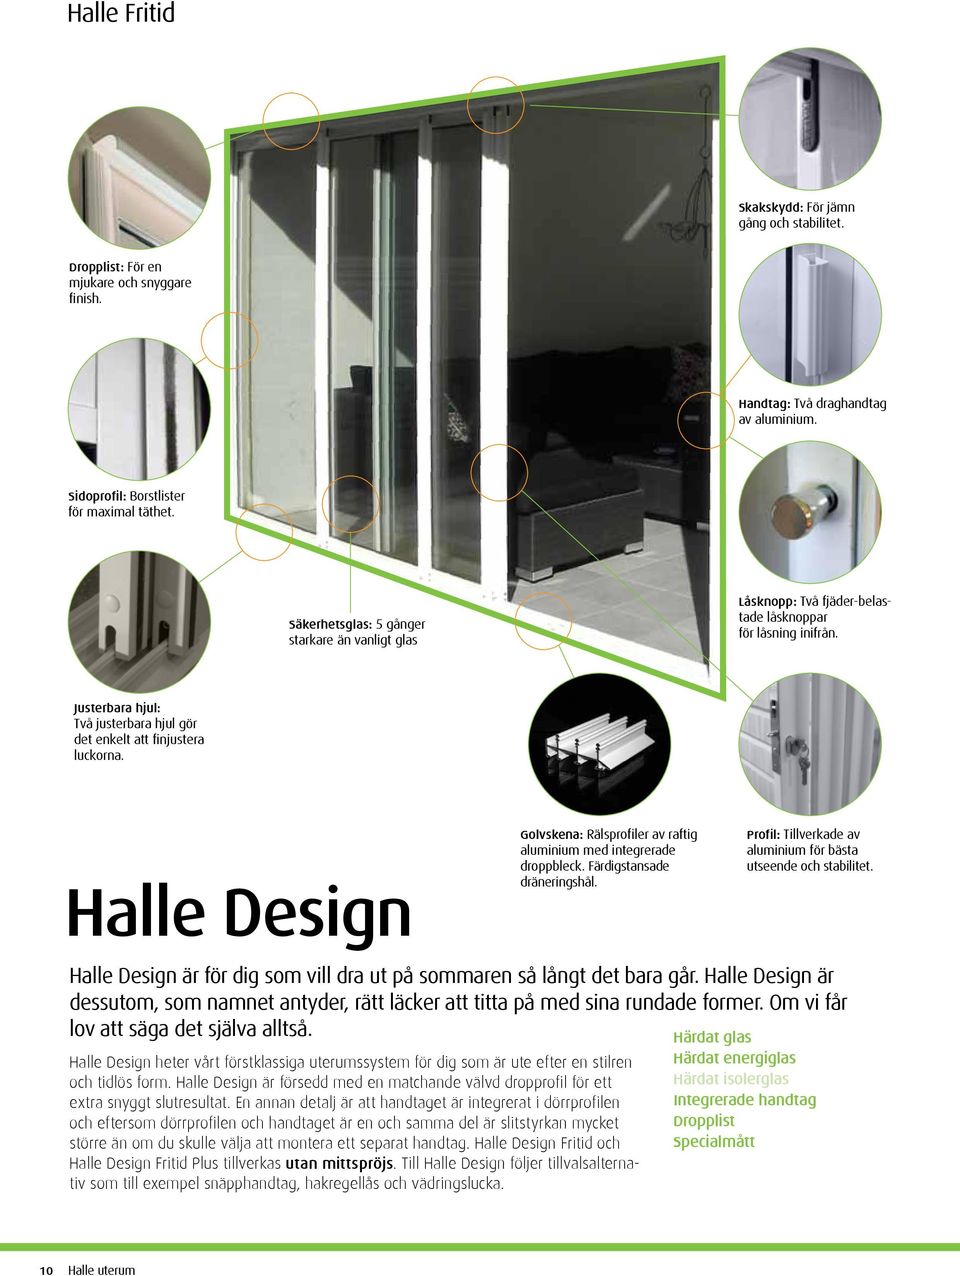 Halle Design Golvskena: Rälsprofiler av raftig aluminium med integrerade droppbleck. Färdigstansade dräneringshål. Profil: Tillverkade av aluminium för bästa utseende och stabilitet.